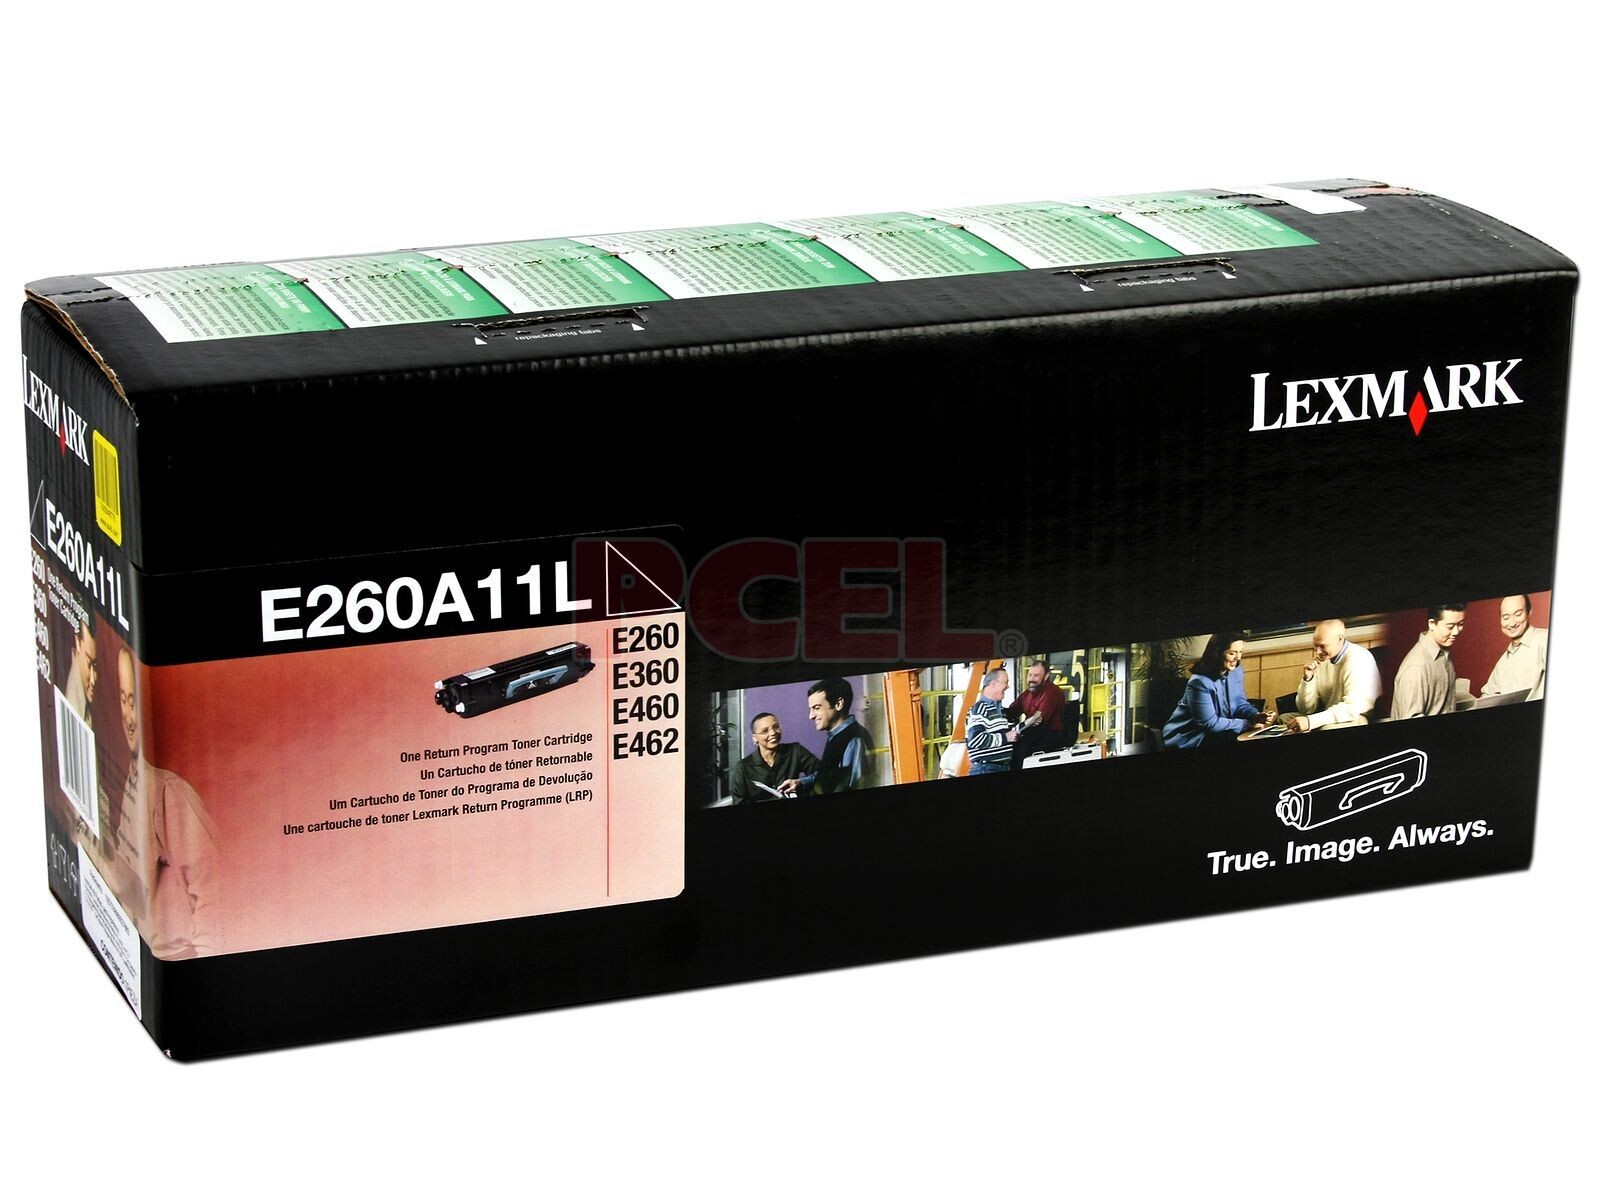 LEXMARK TONER E260A11L E260/E360/E460 3500 COPIAS - 2407 